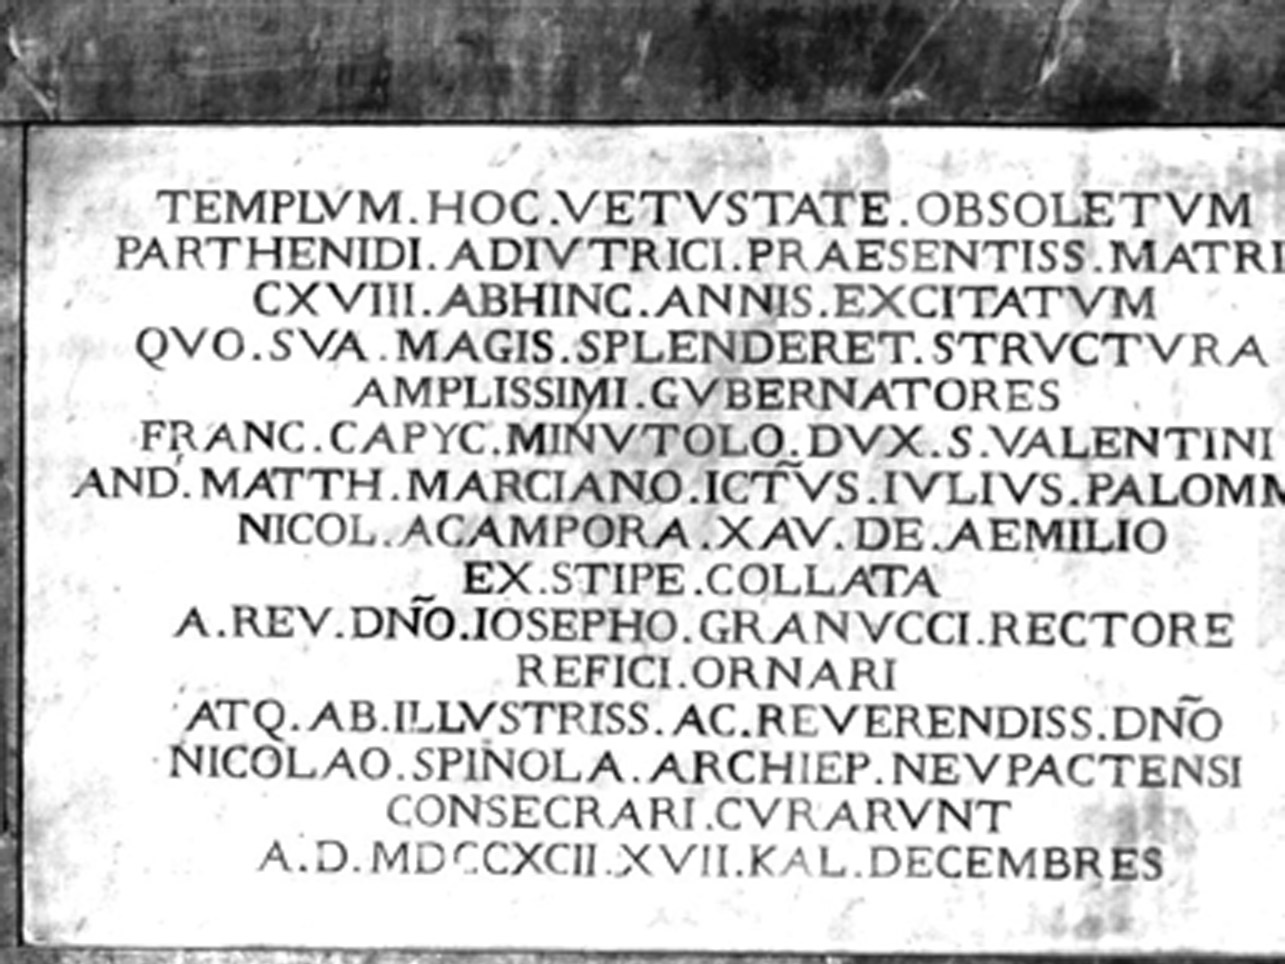 LAPIDE COMMEMORATIVA - ambito napoletano (FINE sec. XVIII)